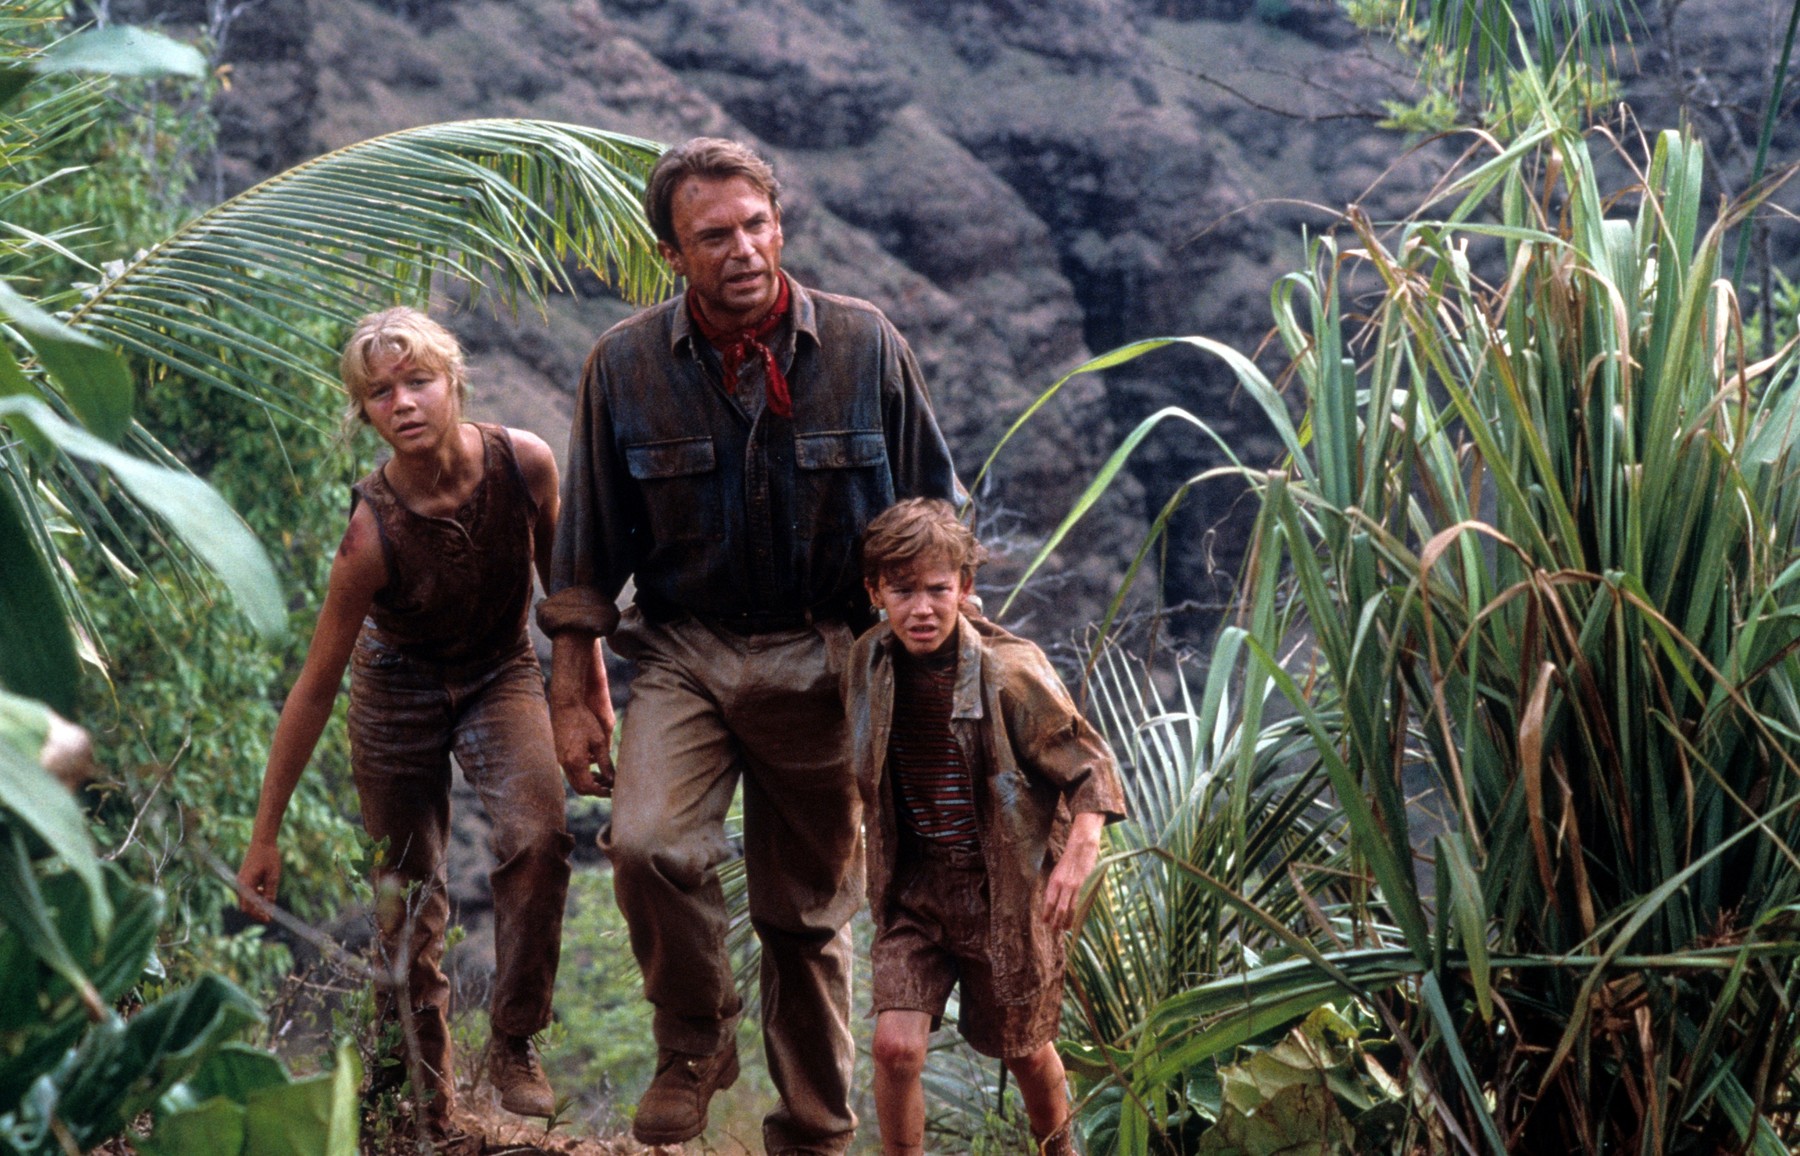 Azonnal ledermedsz, így néznek ki Jurassic Park bájos gyerekszínészei 30 év elteltével a bemutató után